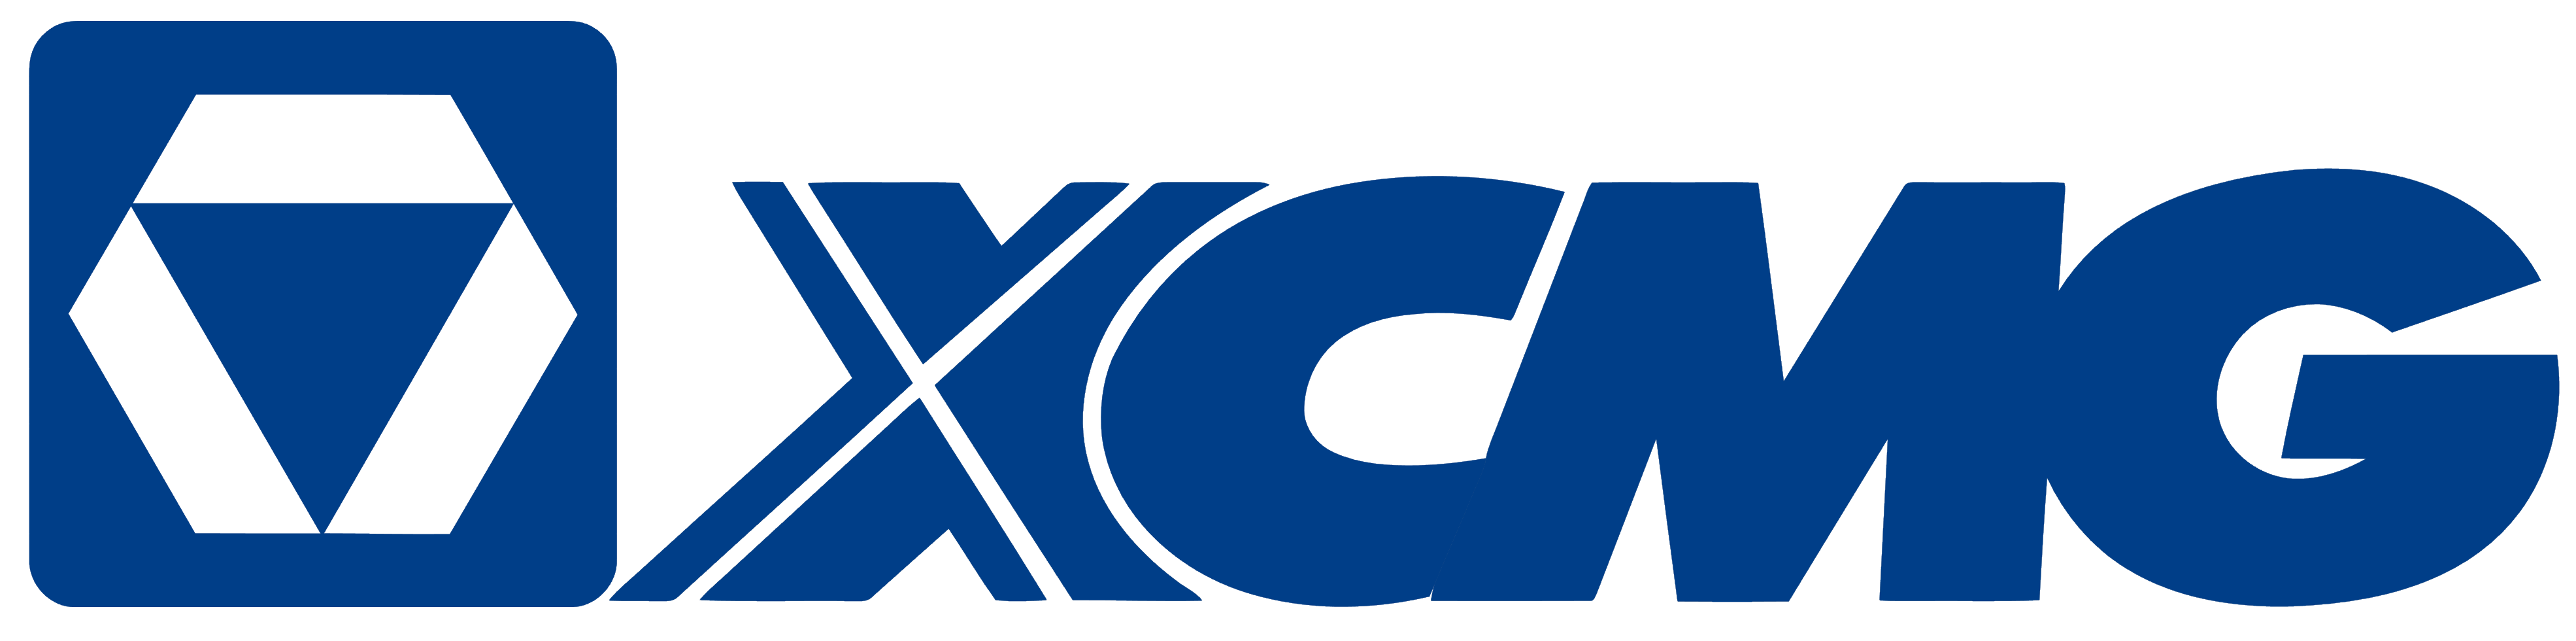 xcmg-logo-1.png